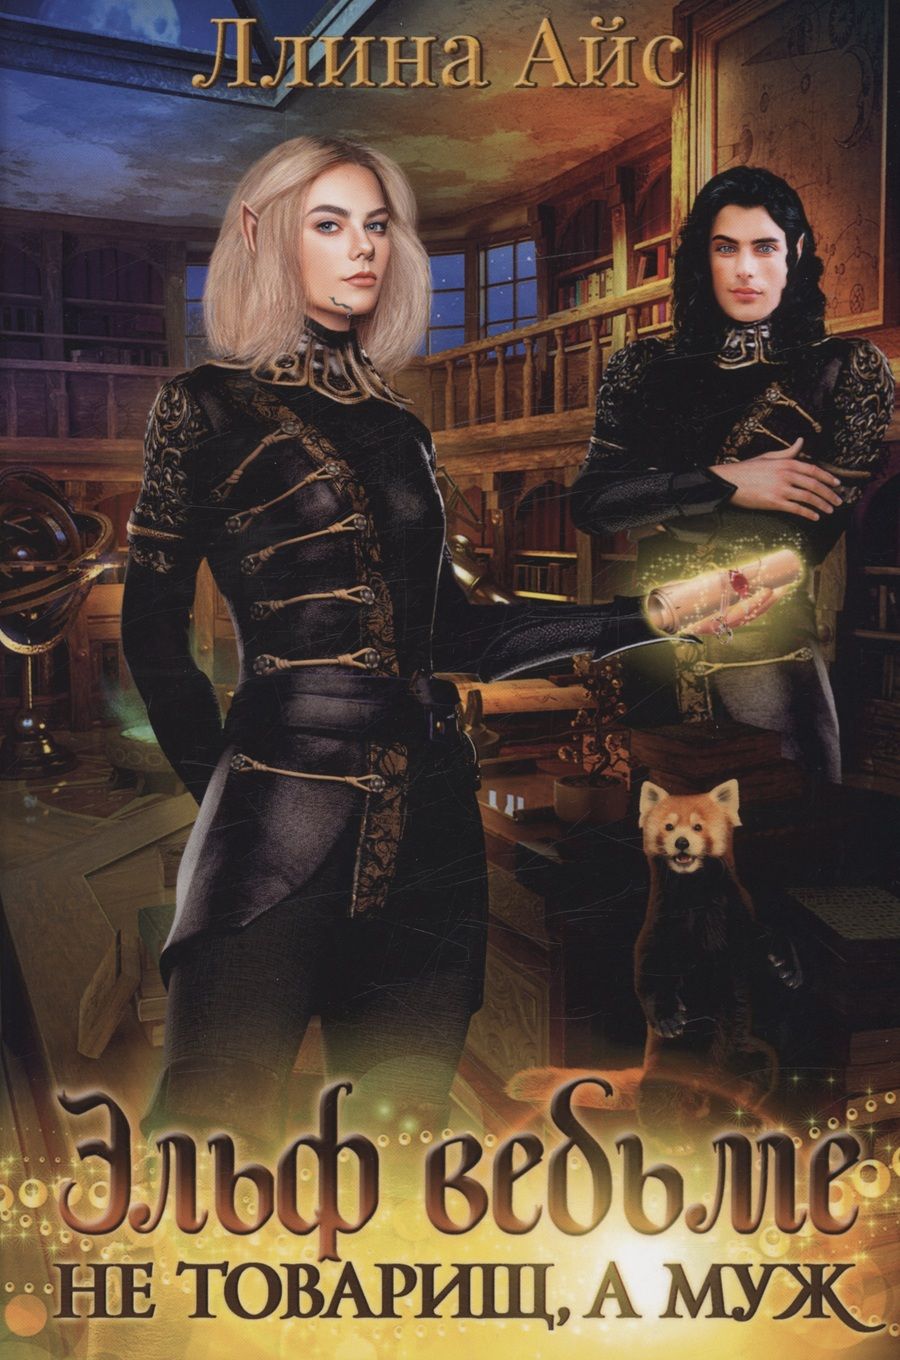 Обложка книги "Айс: Эльф ведьме не товарищ, а муж"